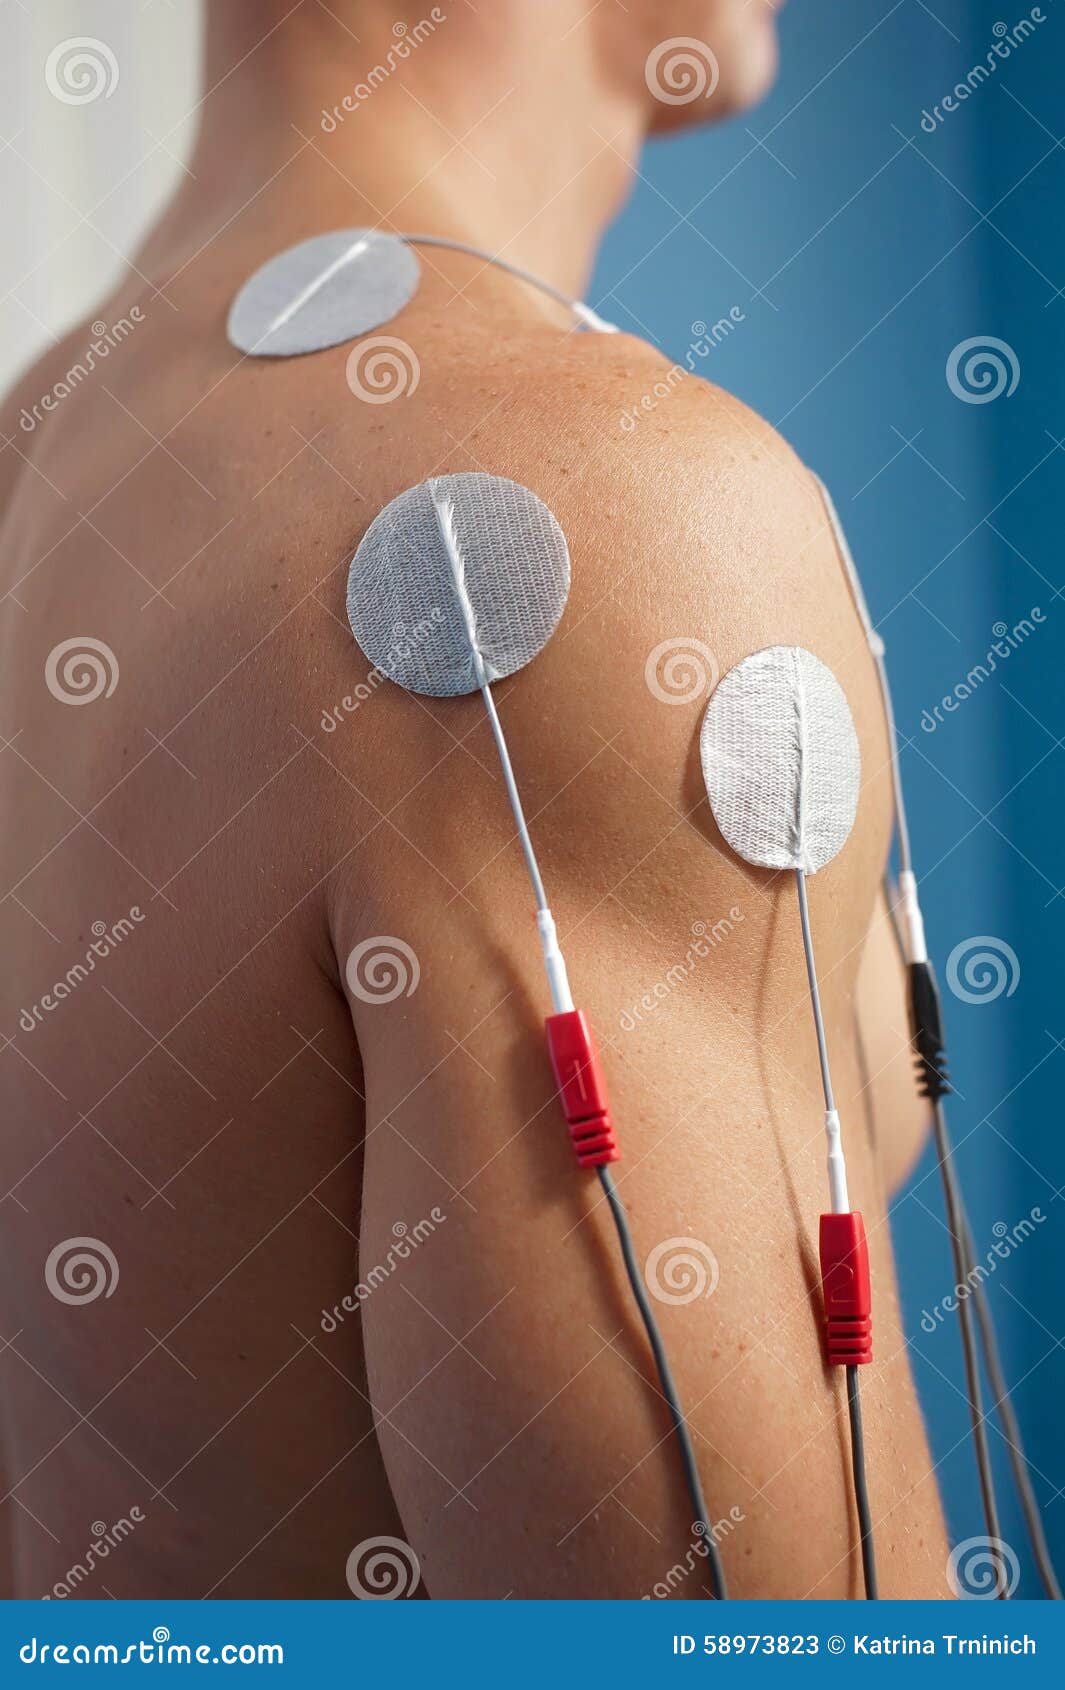 shoulder electrical stimulation / tens